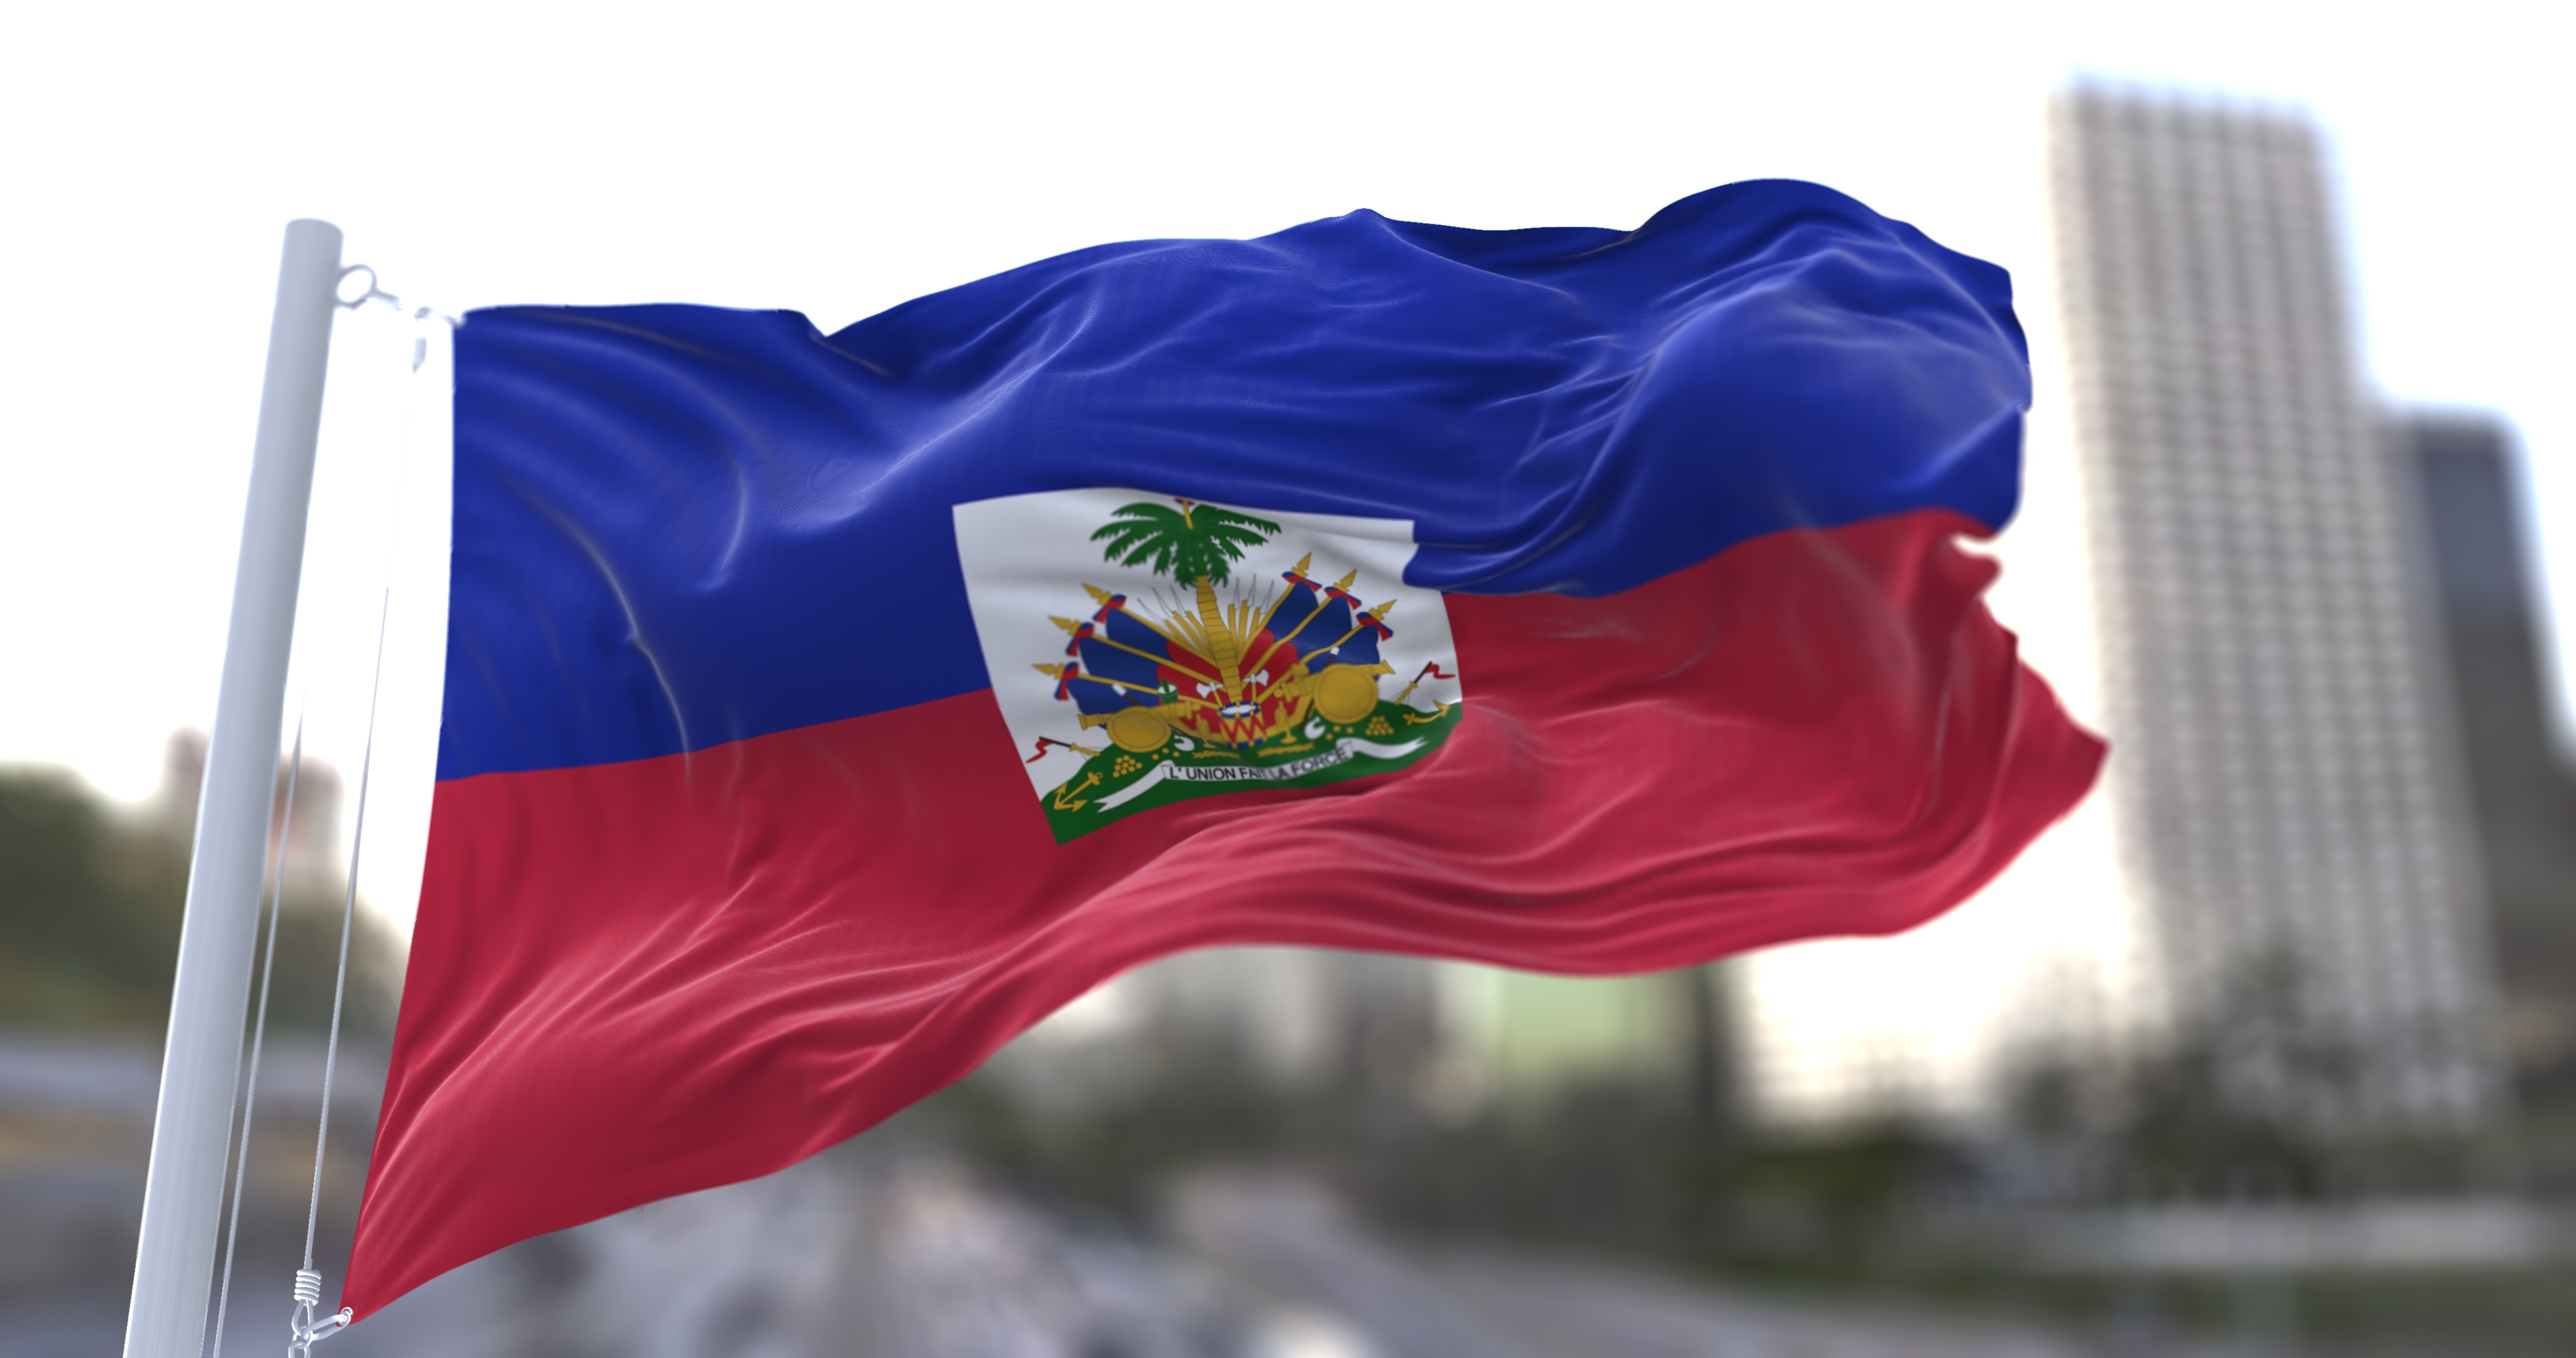     Haïti: 12 habitants d'une ville tués par un gang armé

